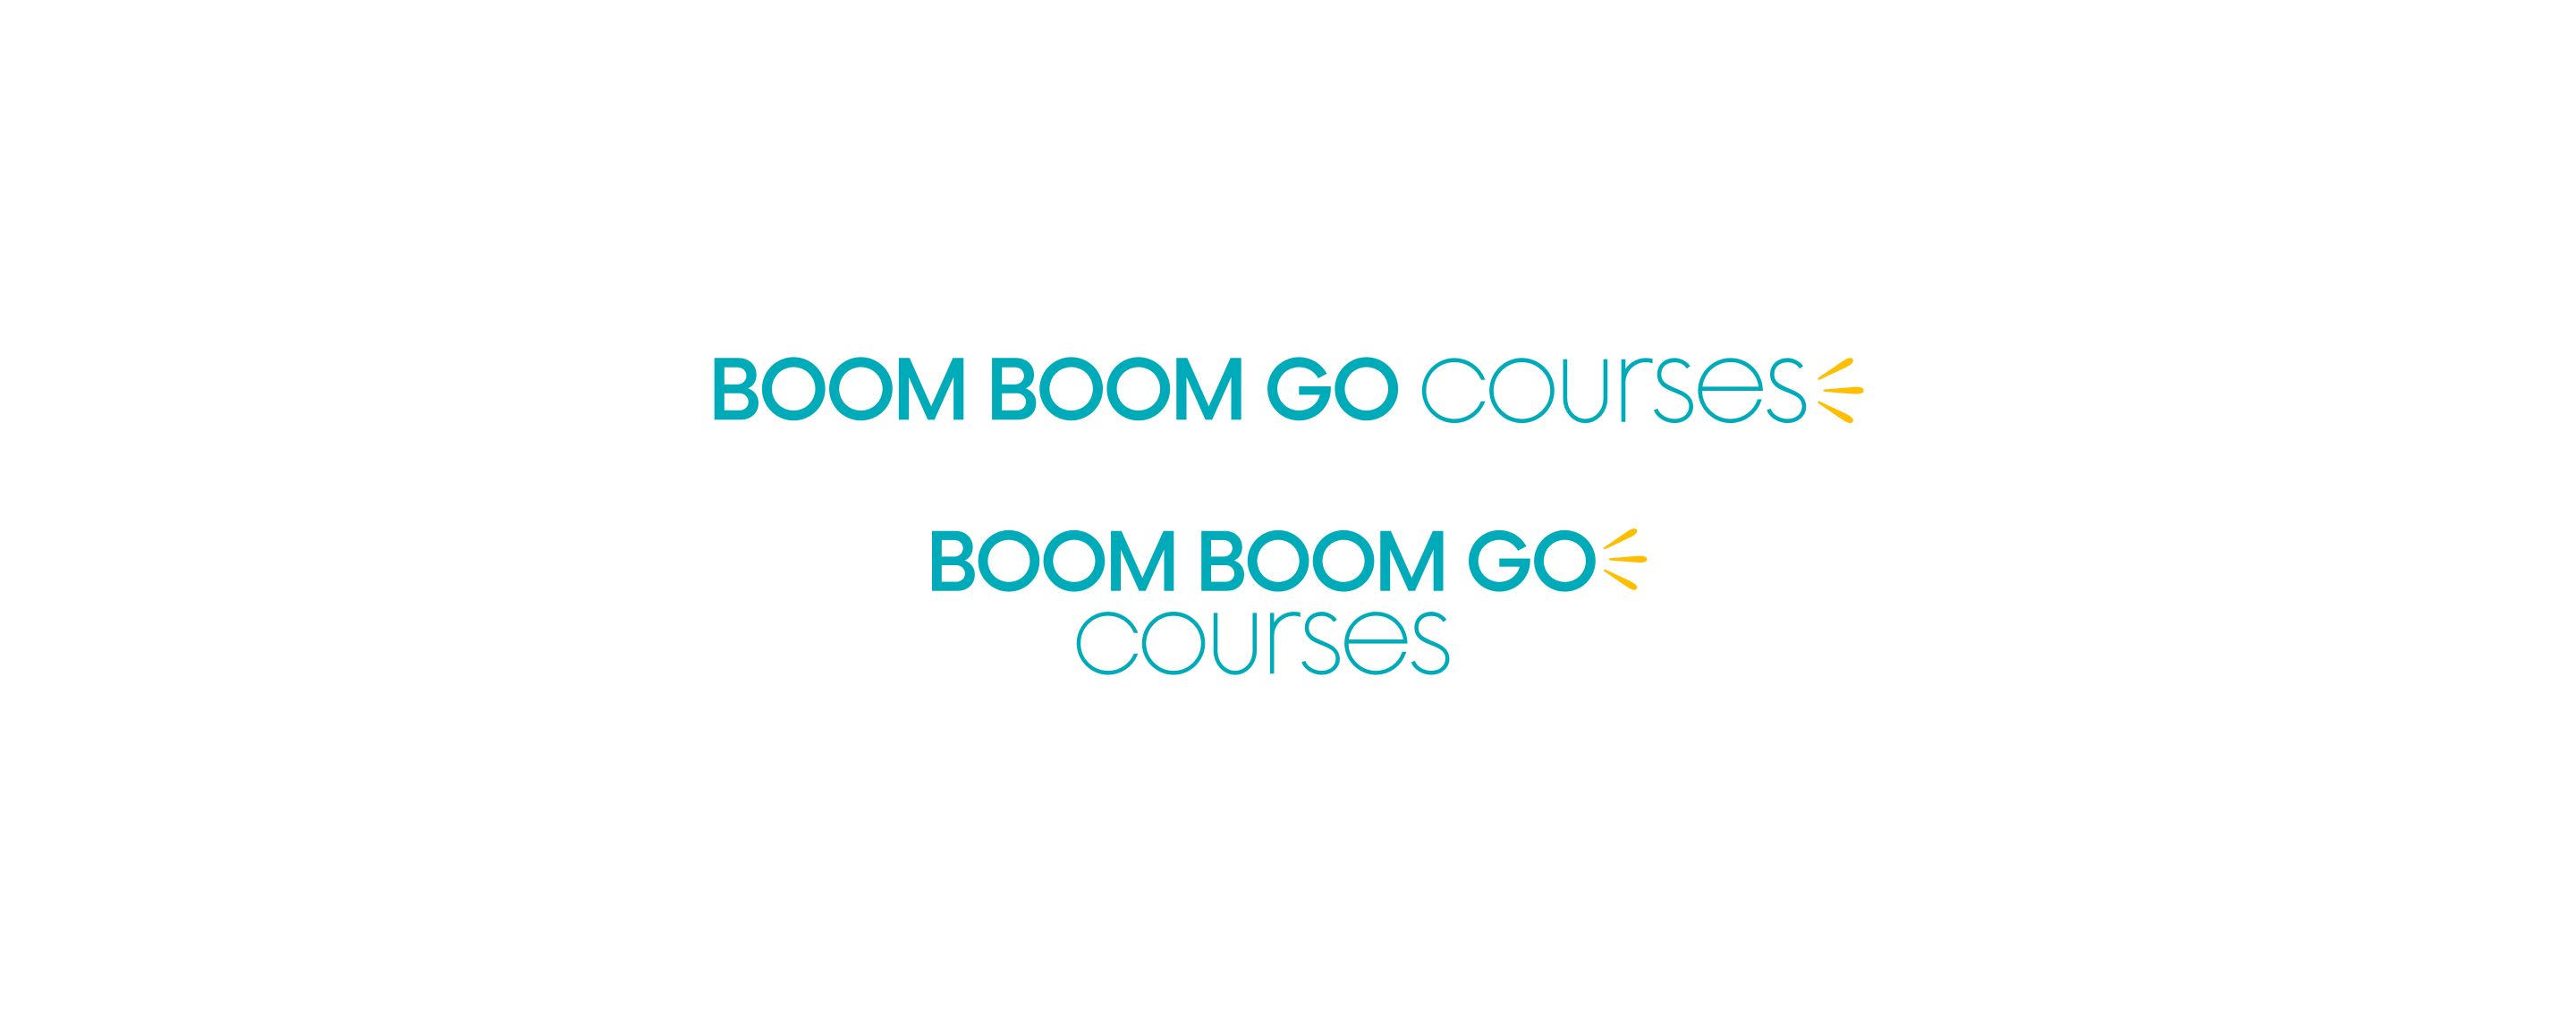 Courses logos